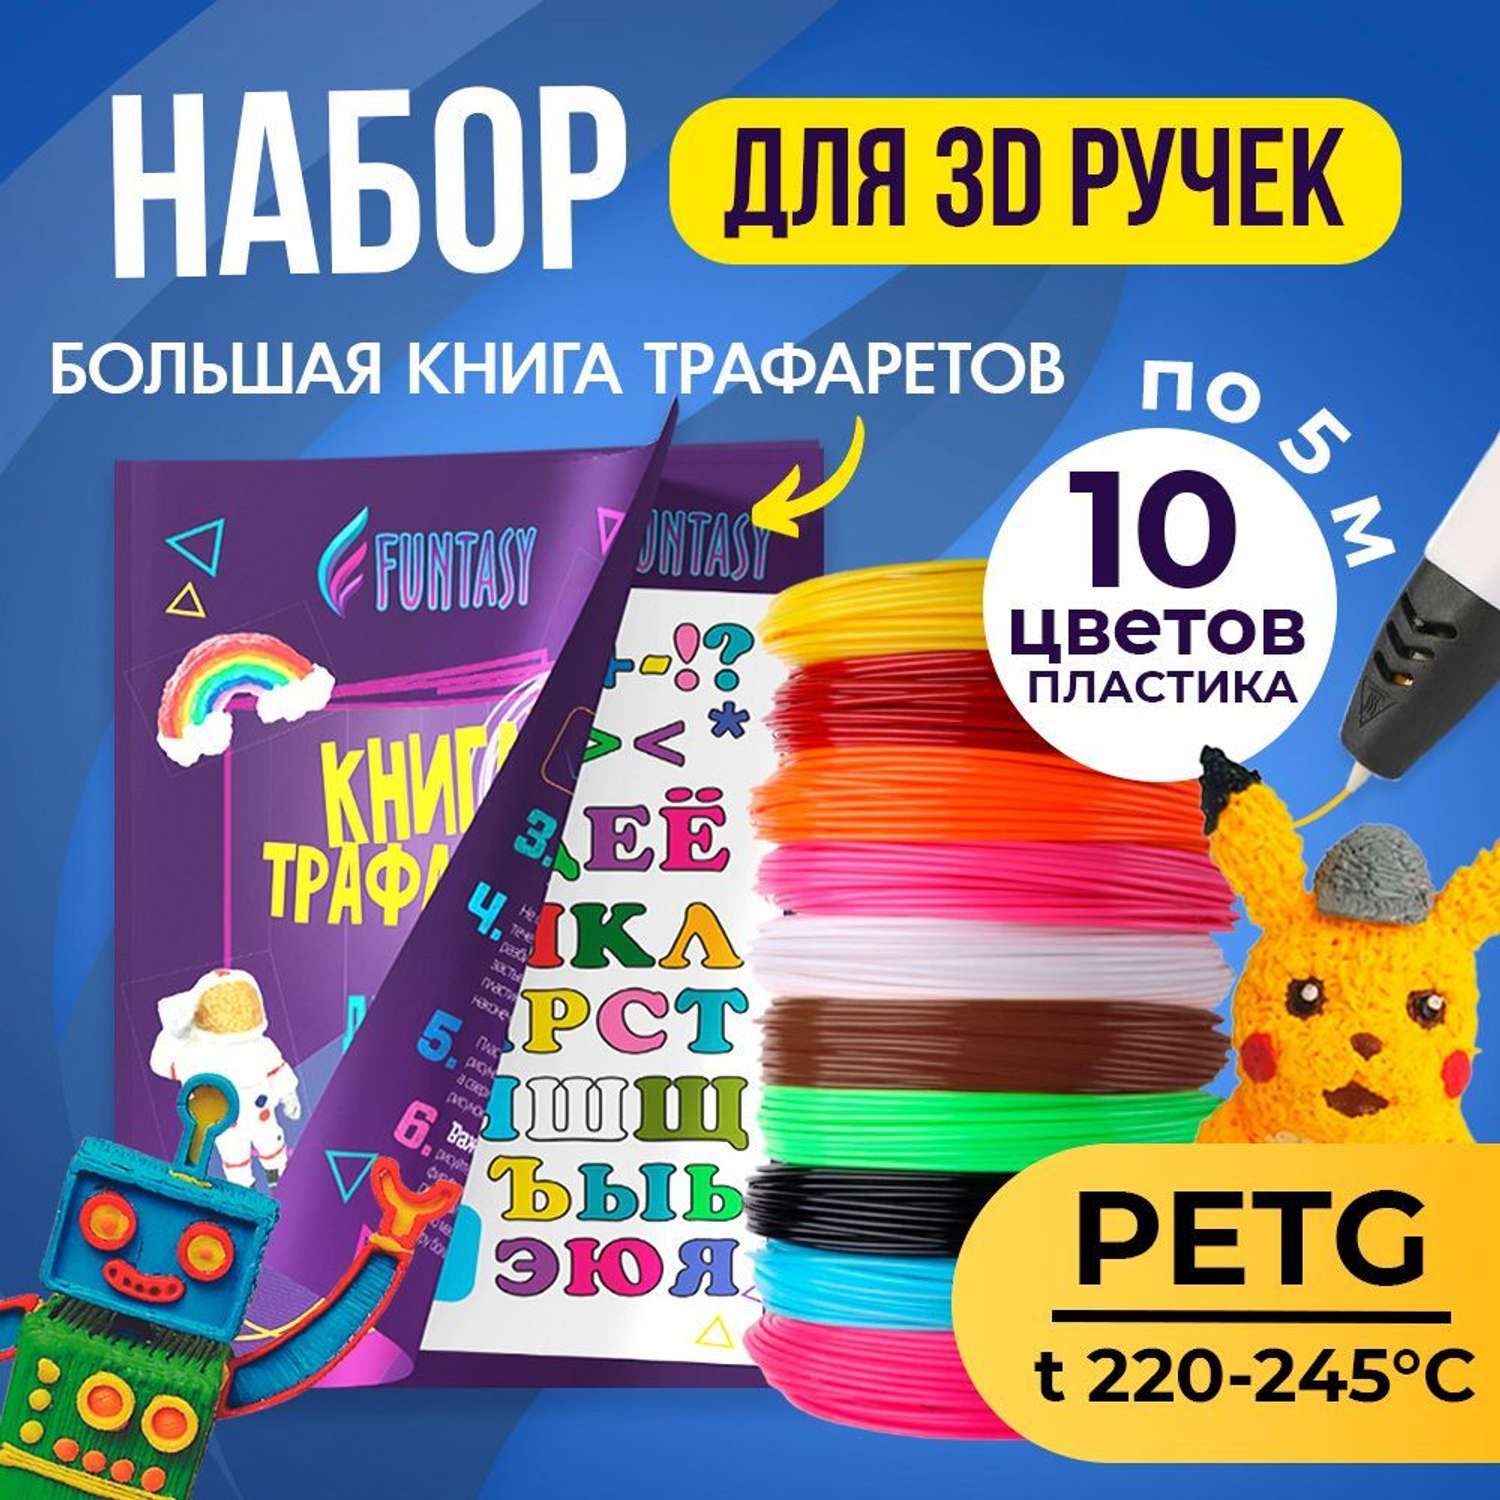 Набор для 3D-ручки PETG Funtasy 10 цветов по 5 метров - фото 2